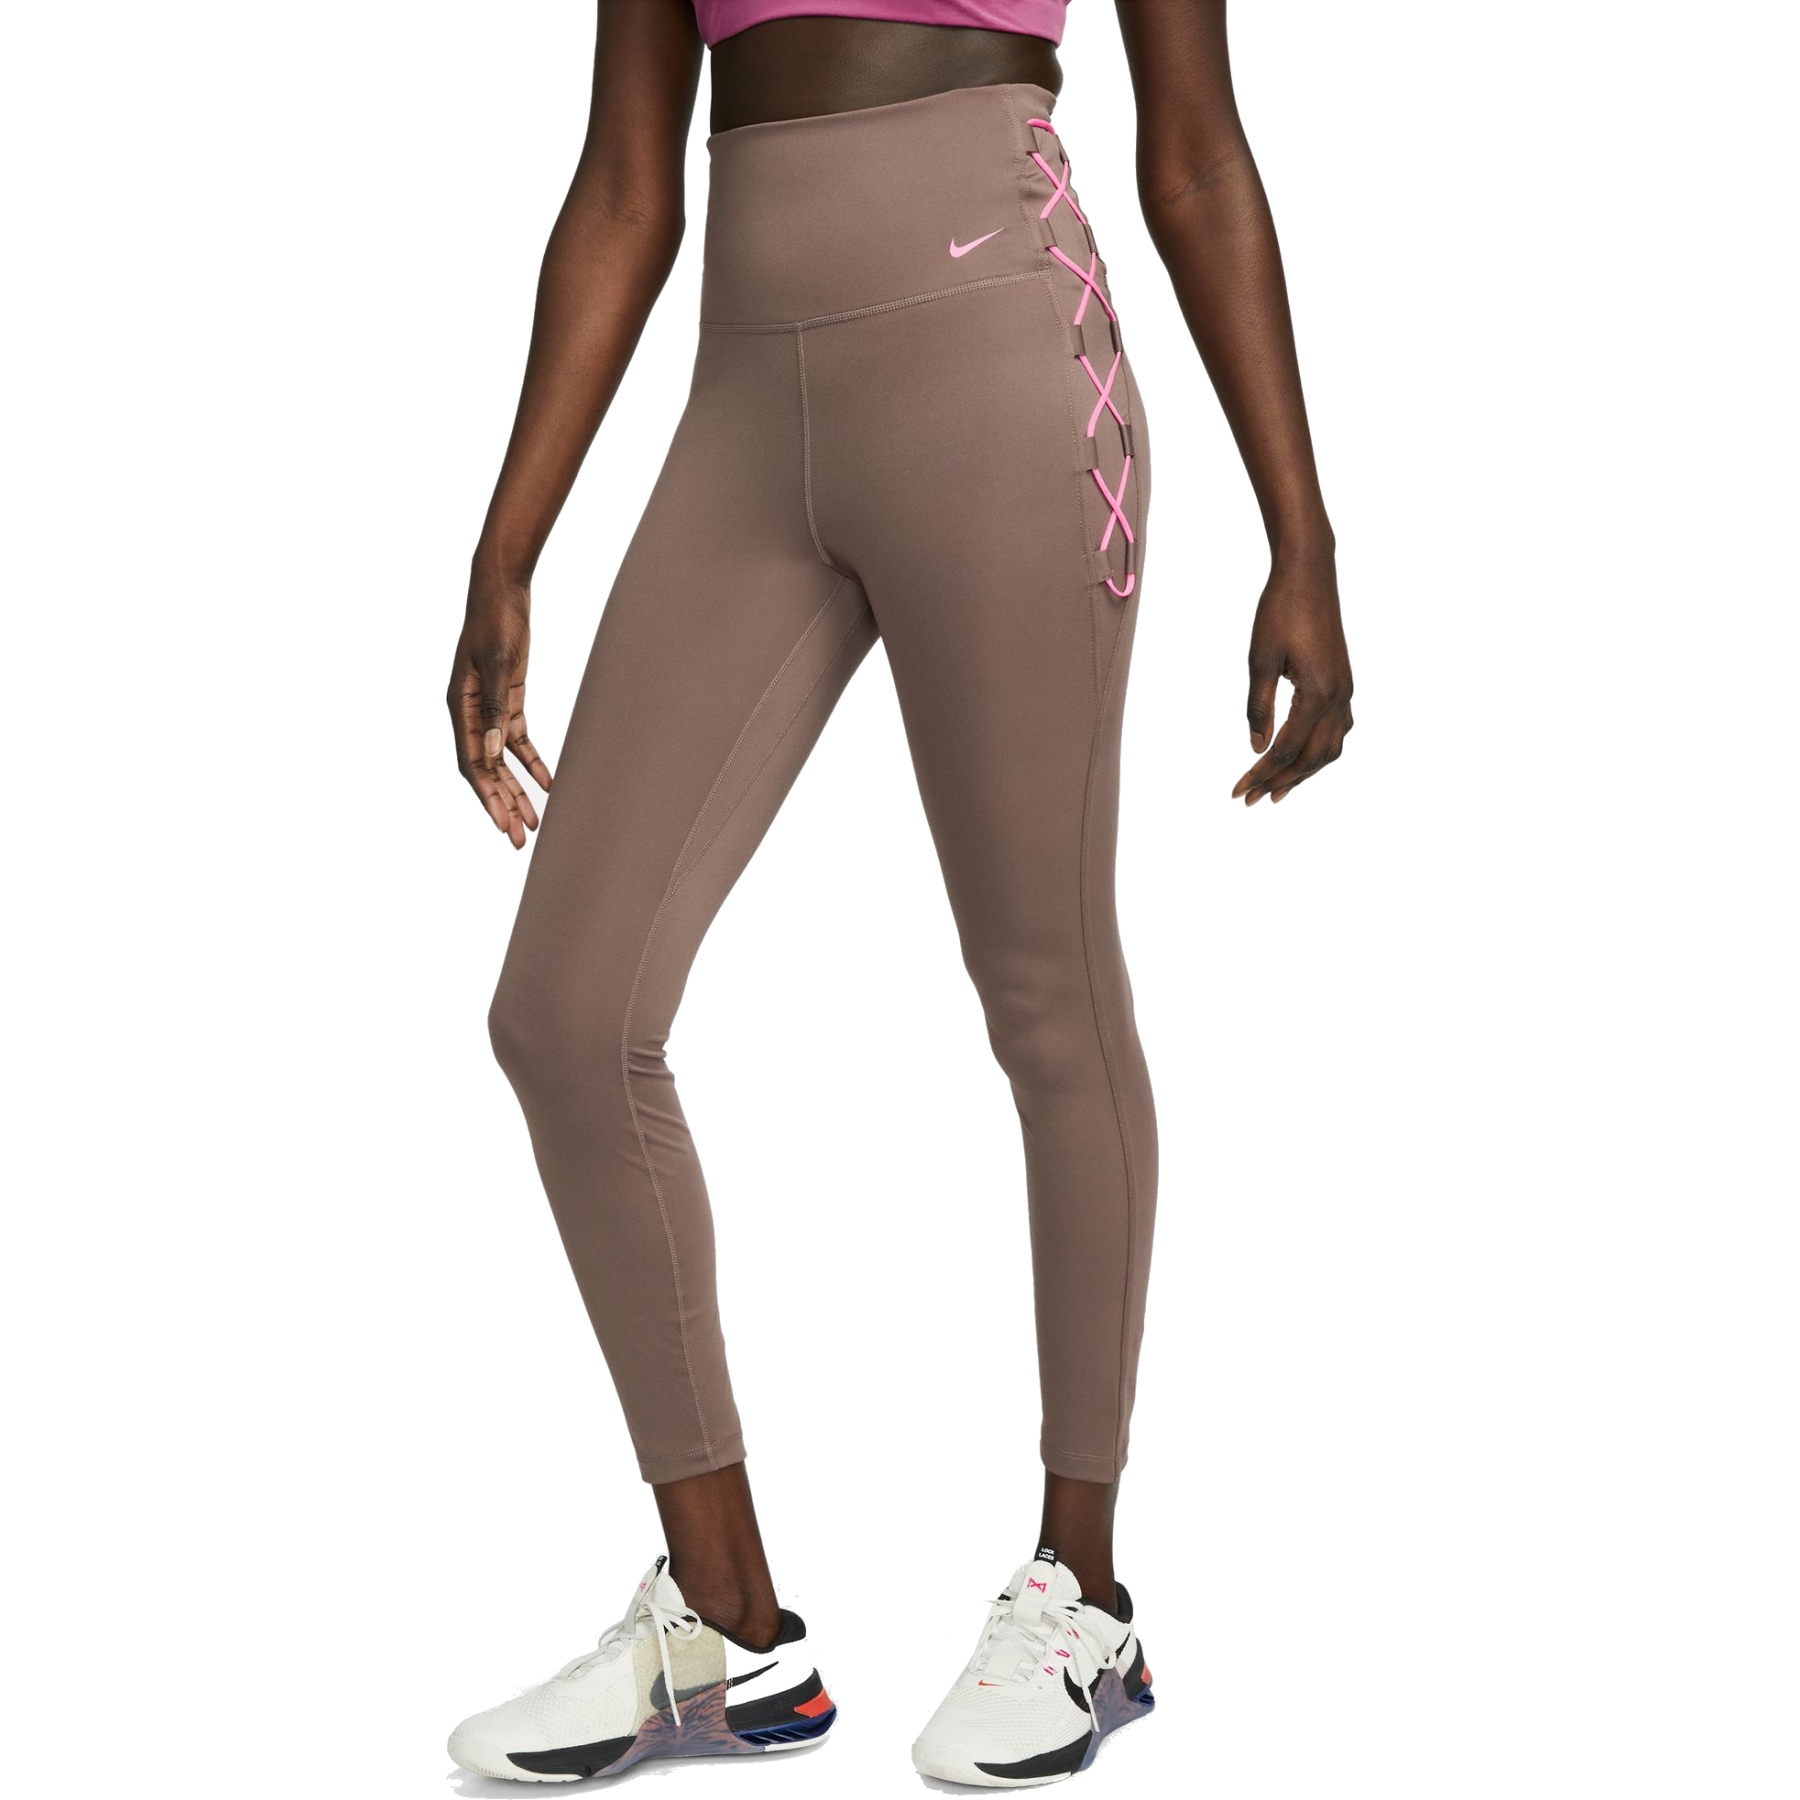 Produktbild von Nike One Dri-FIT 7/8 Novelty Tights Damen - plum eclipse/pink glow/pink glow DX0006-291